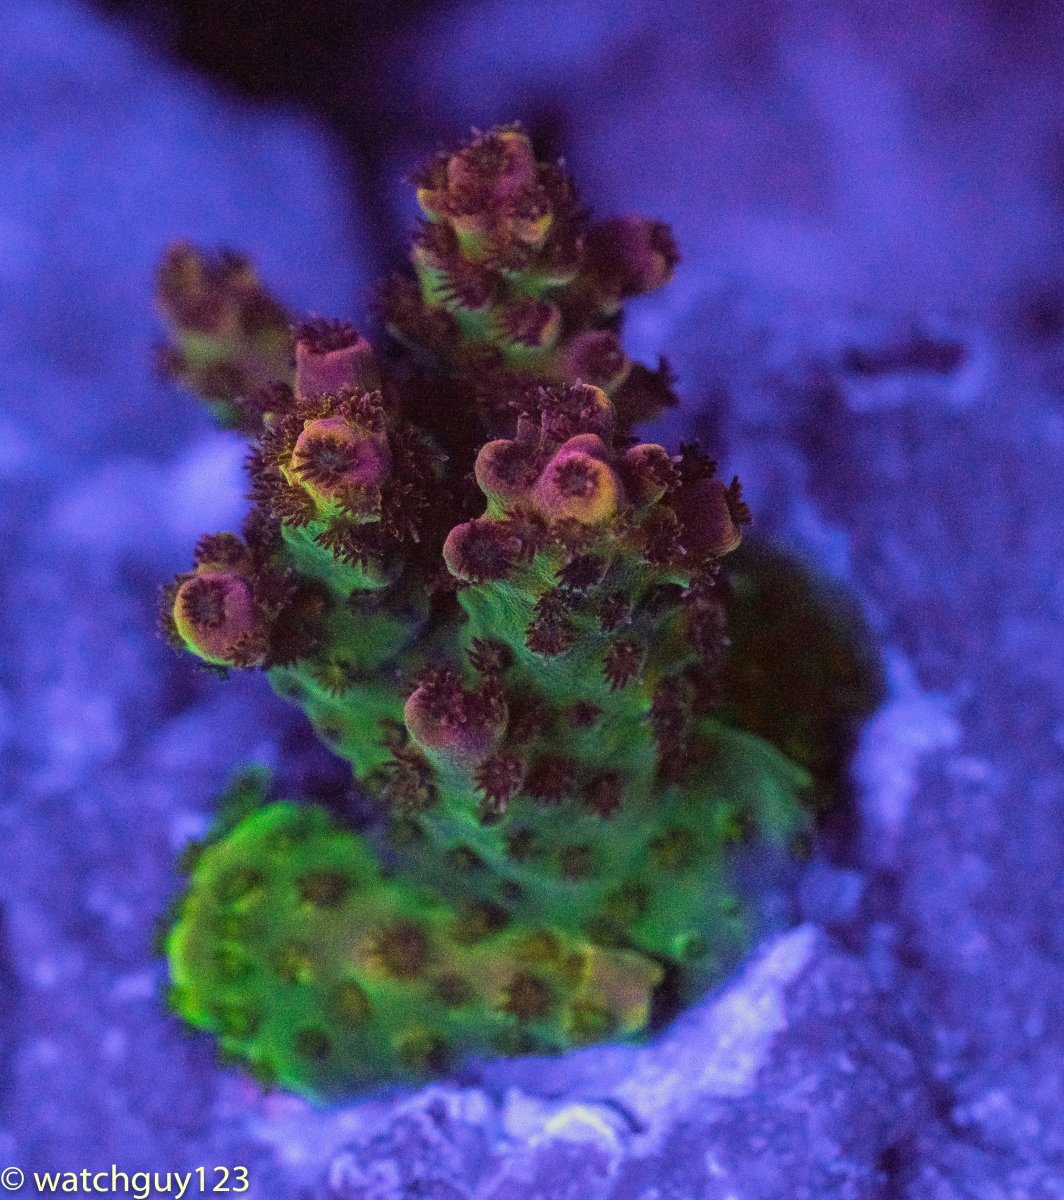 coral-34.jpg